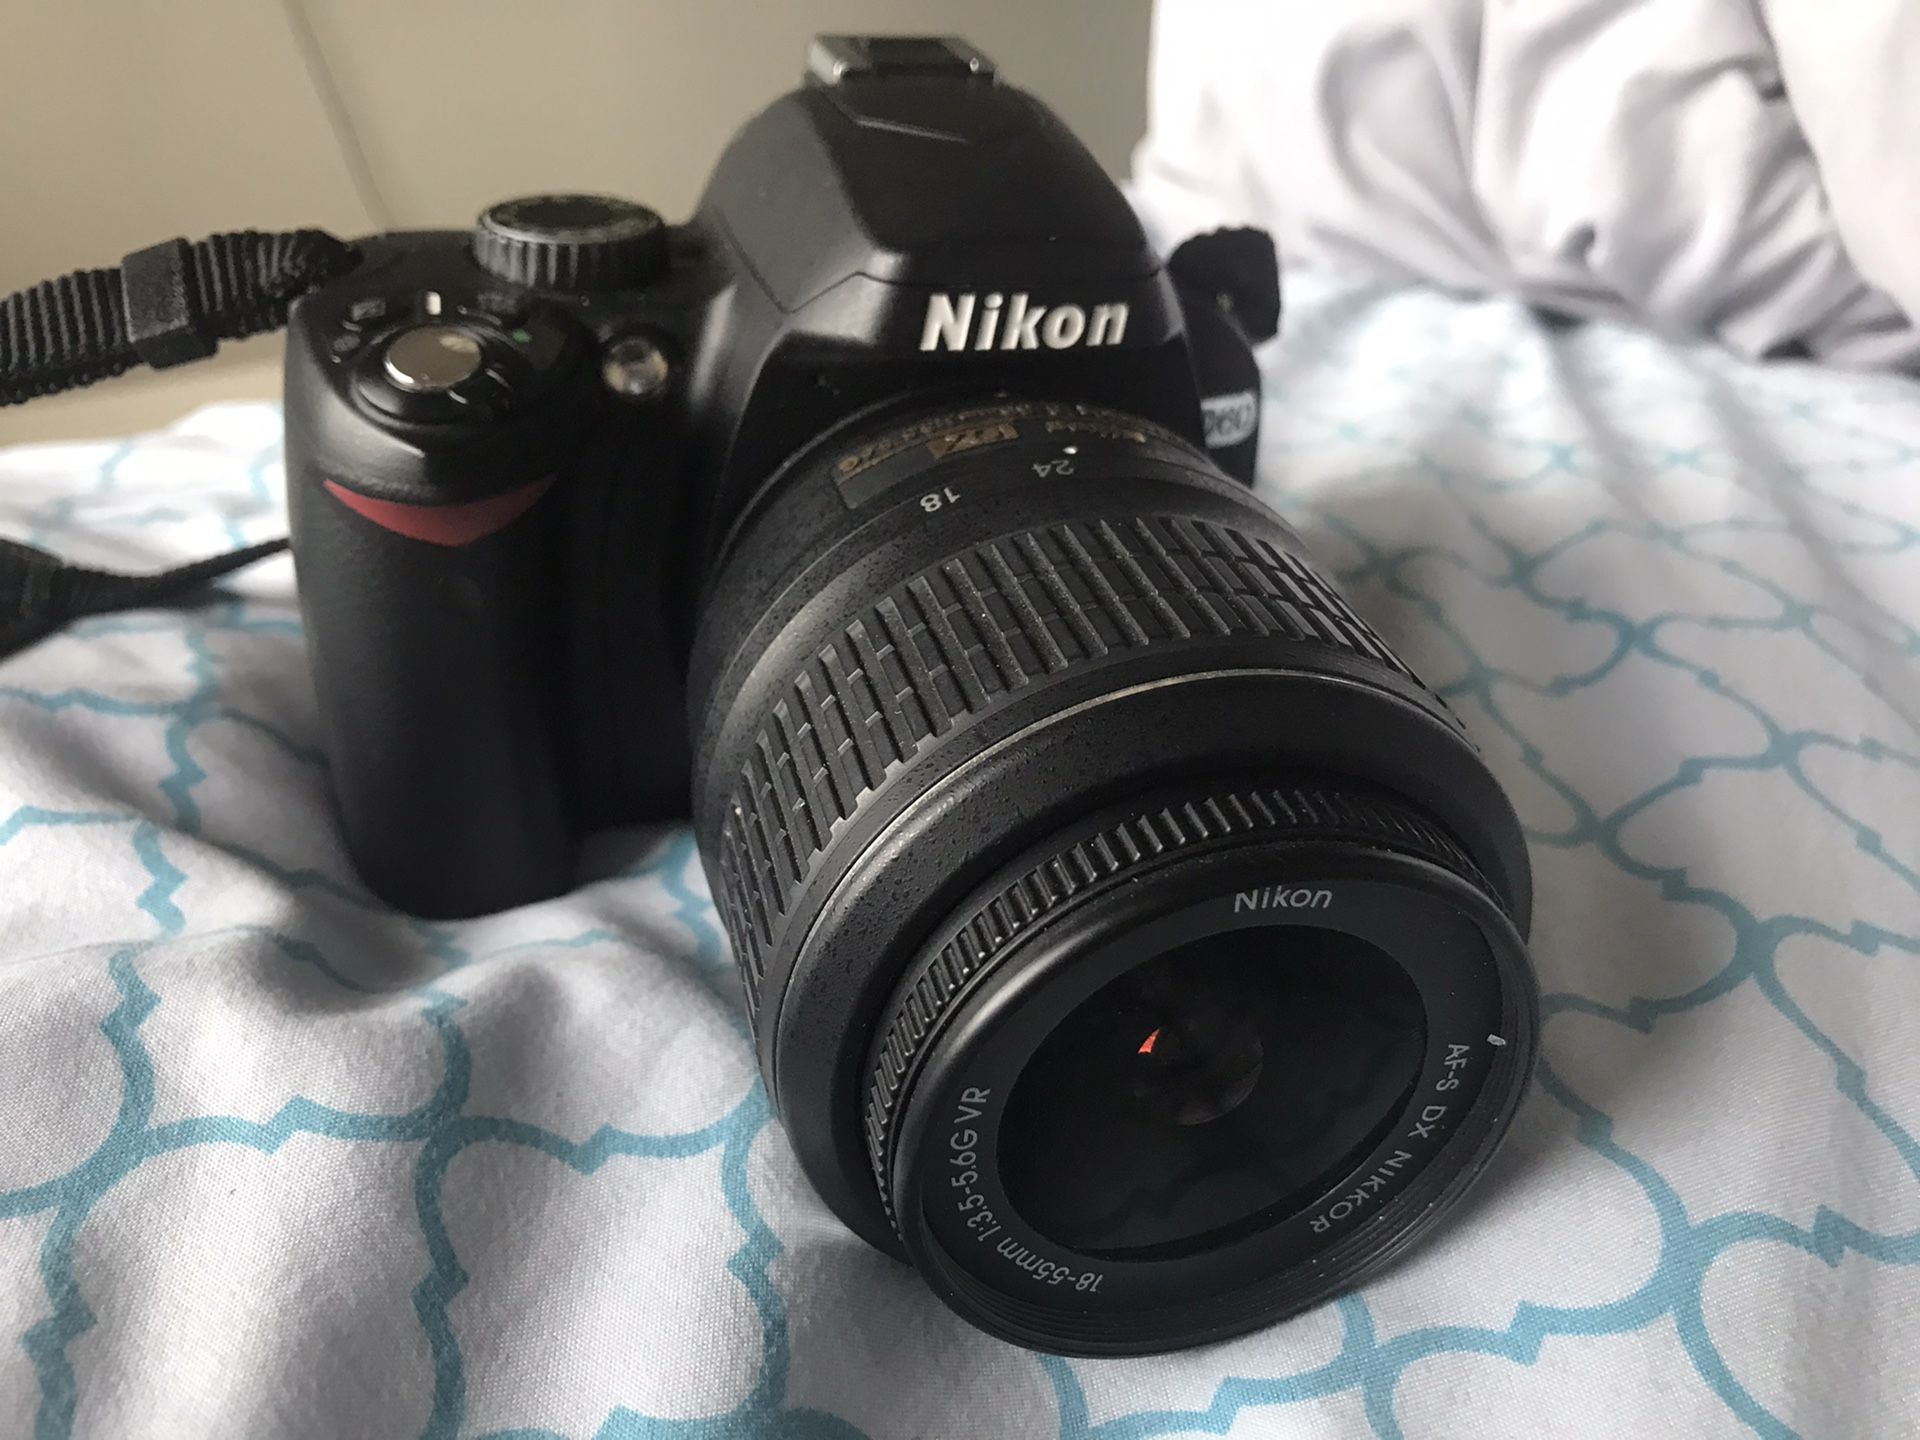 Nikon D60 camera